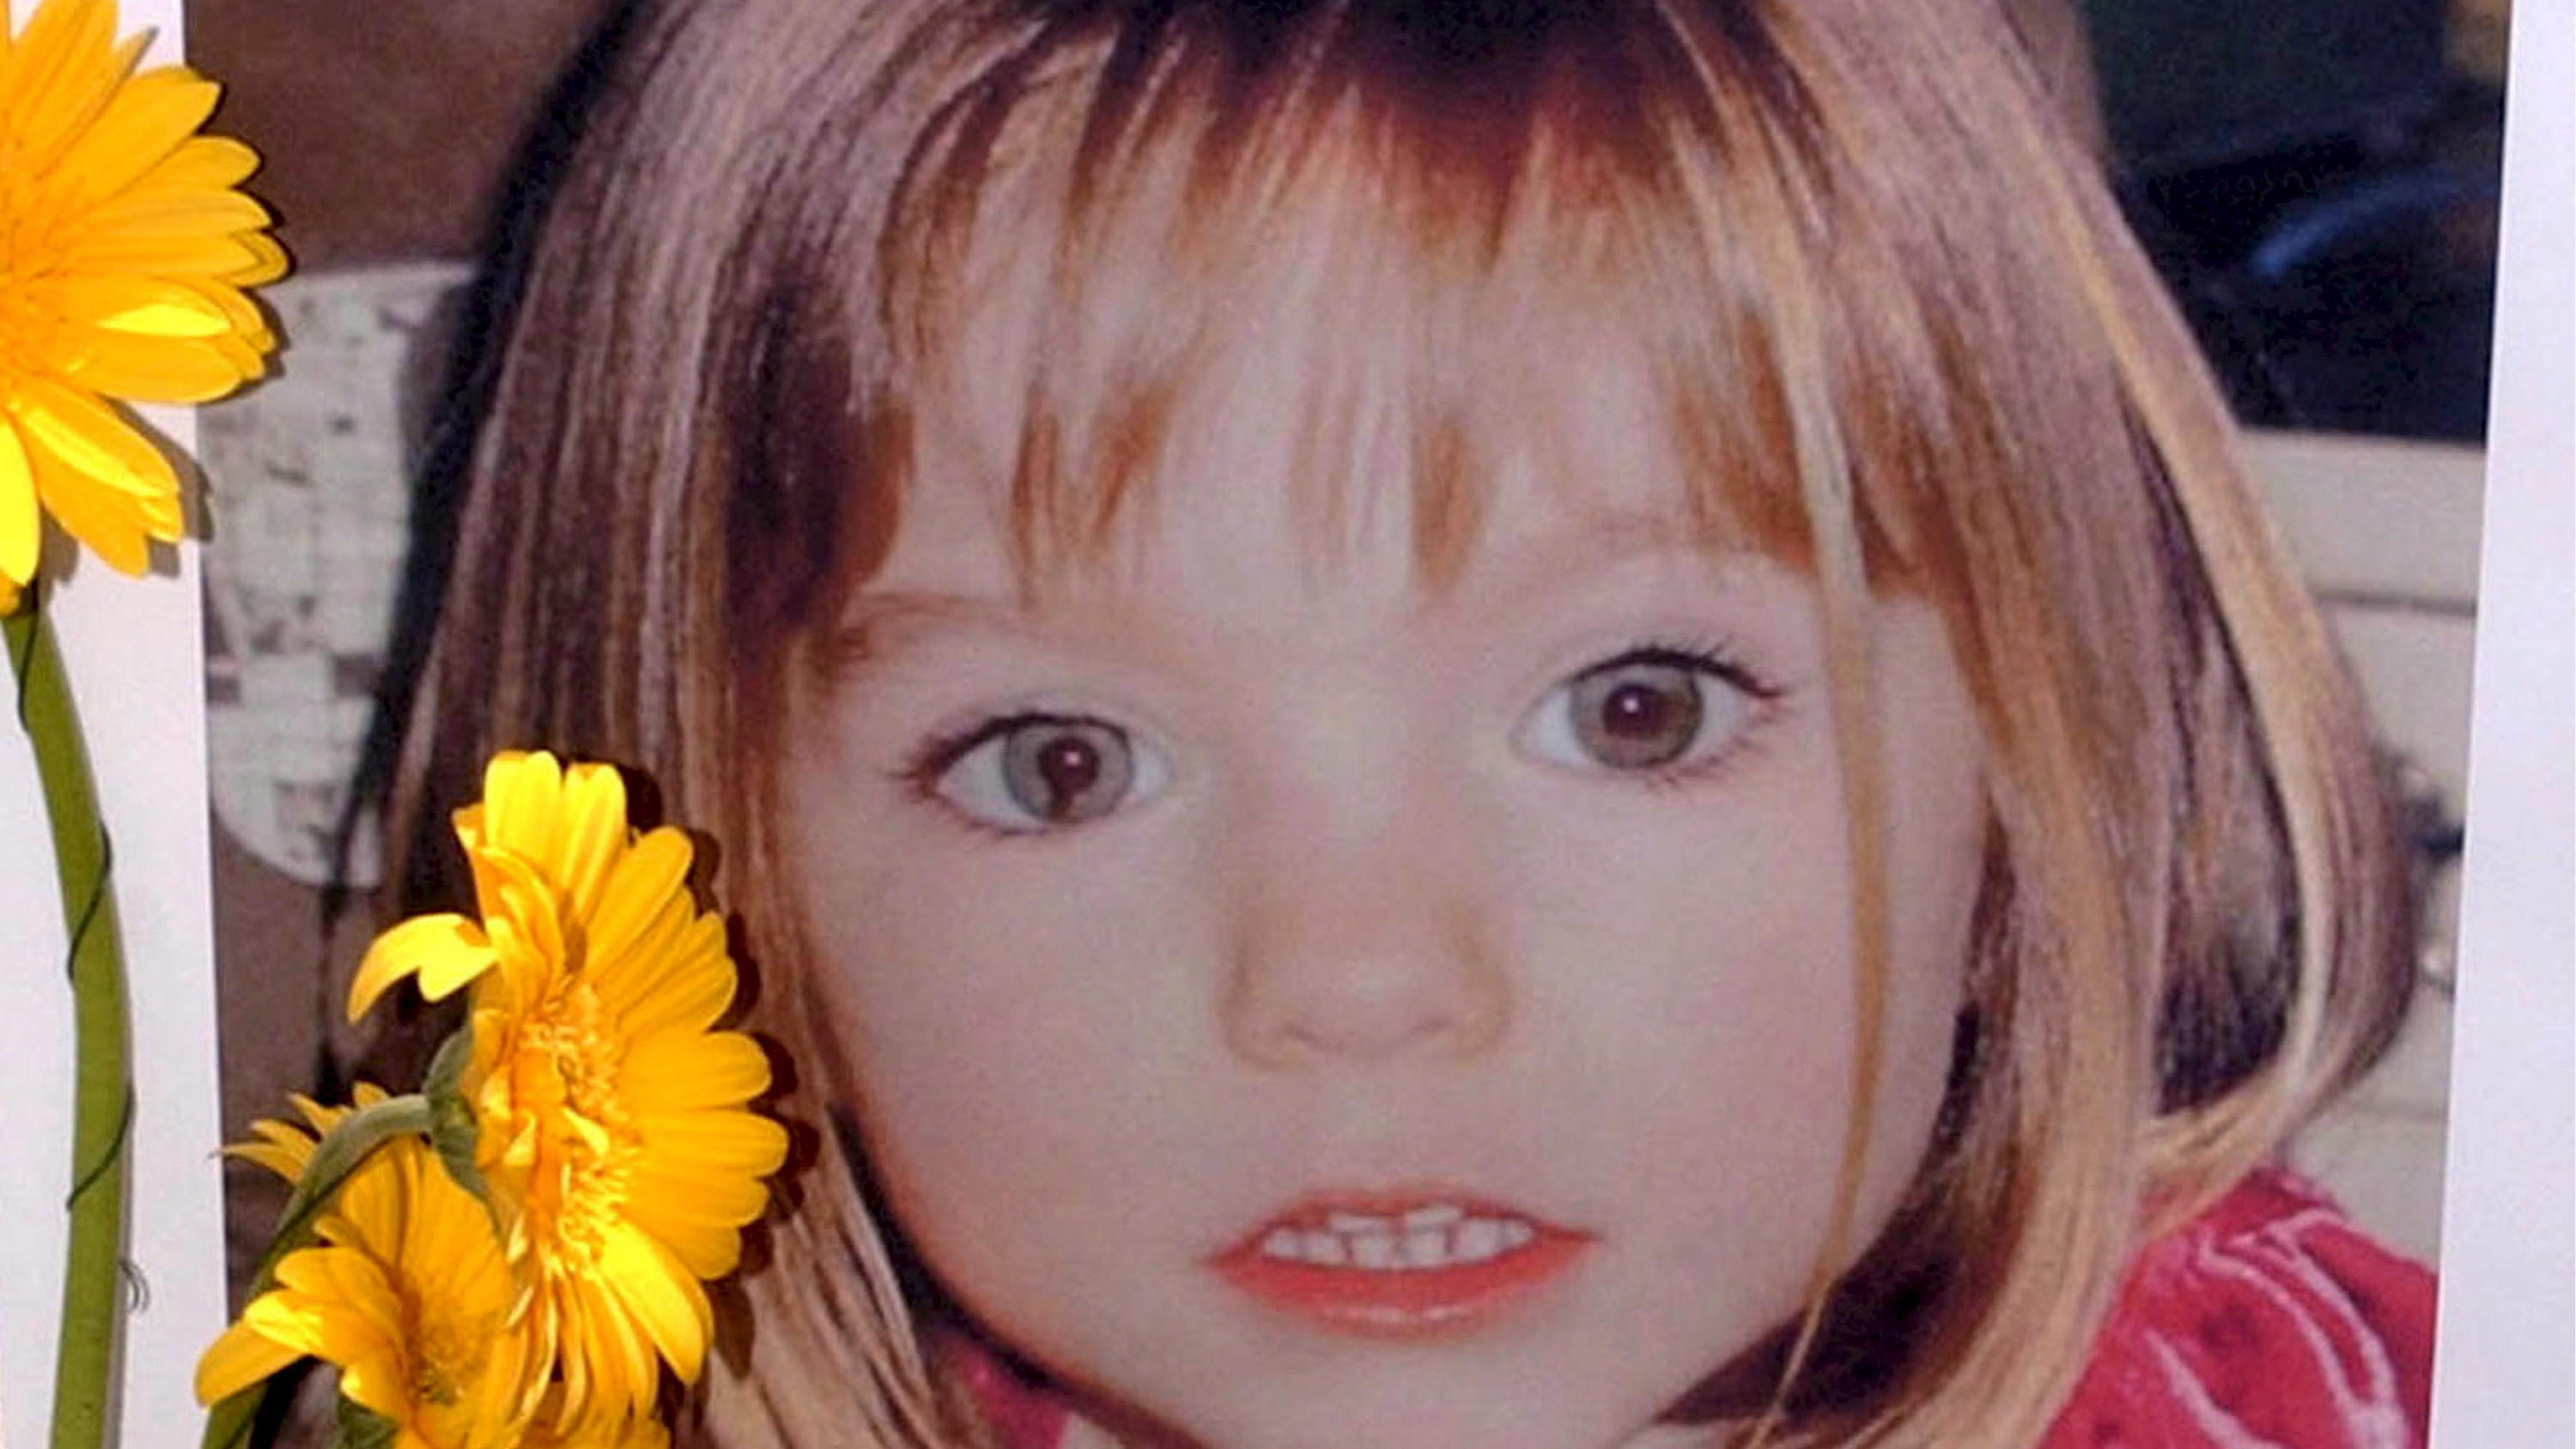 ARCHIV - 12.05.2007, Portugal, Lagos: Blumen stehen vor einem Bild, das die verschwundenen Madeleine McCann (Maddie) auf einem Foto zeigt, das ihre Eltern im Zusammenhang mit dem Verschwinden des Kindes veröffentlich haben. (zu dpa "Verdächtiger im F